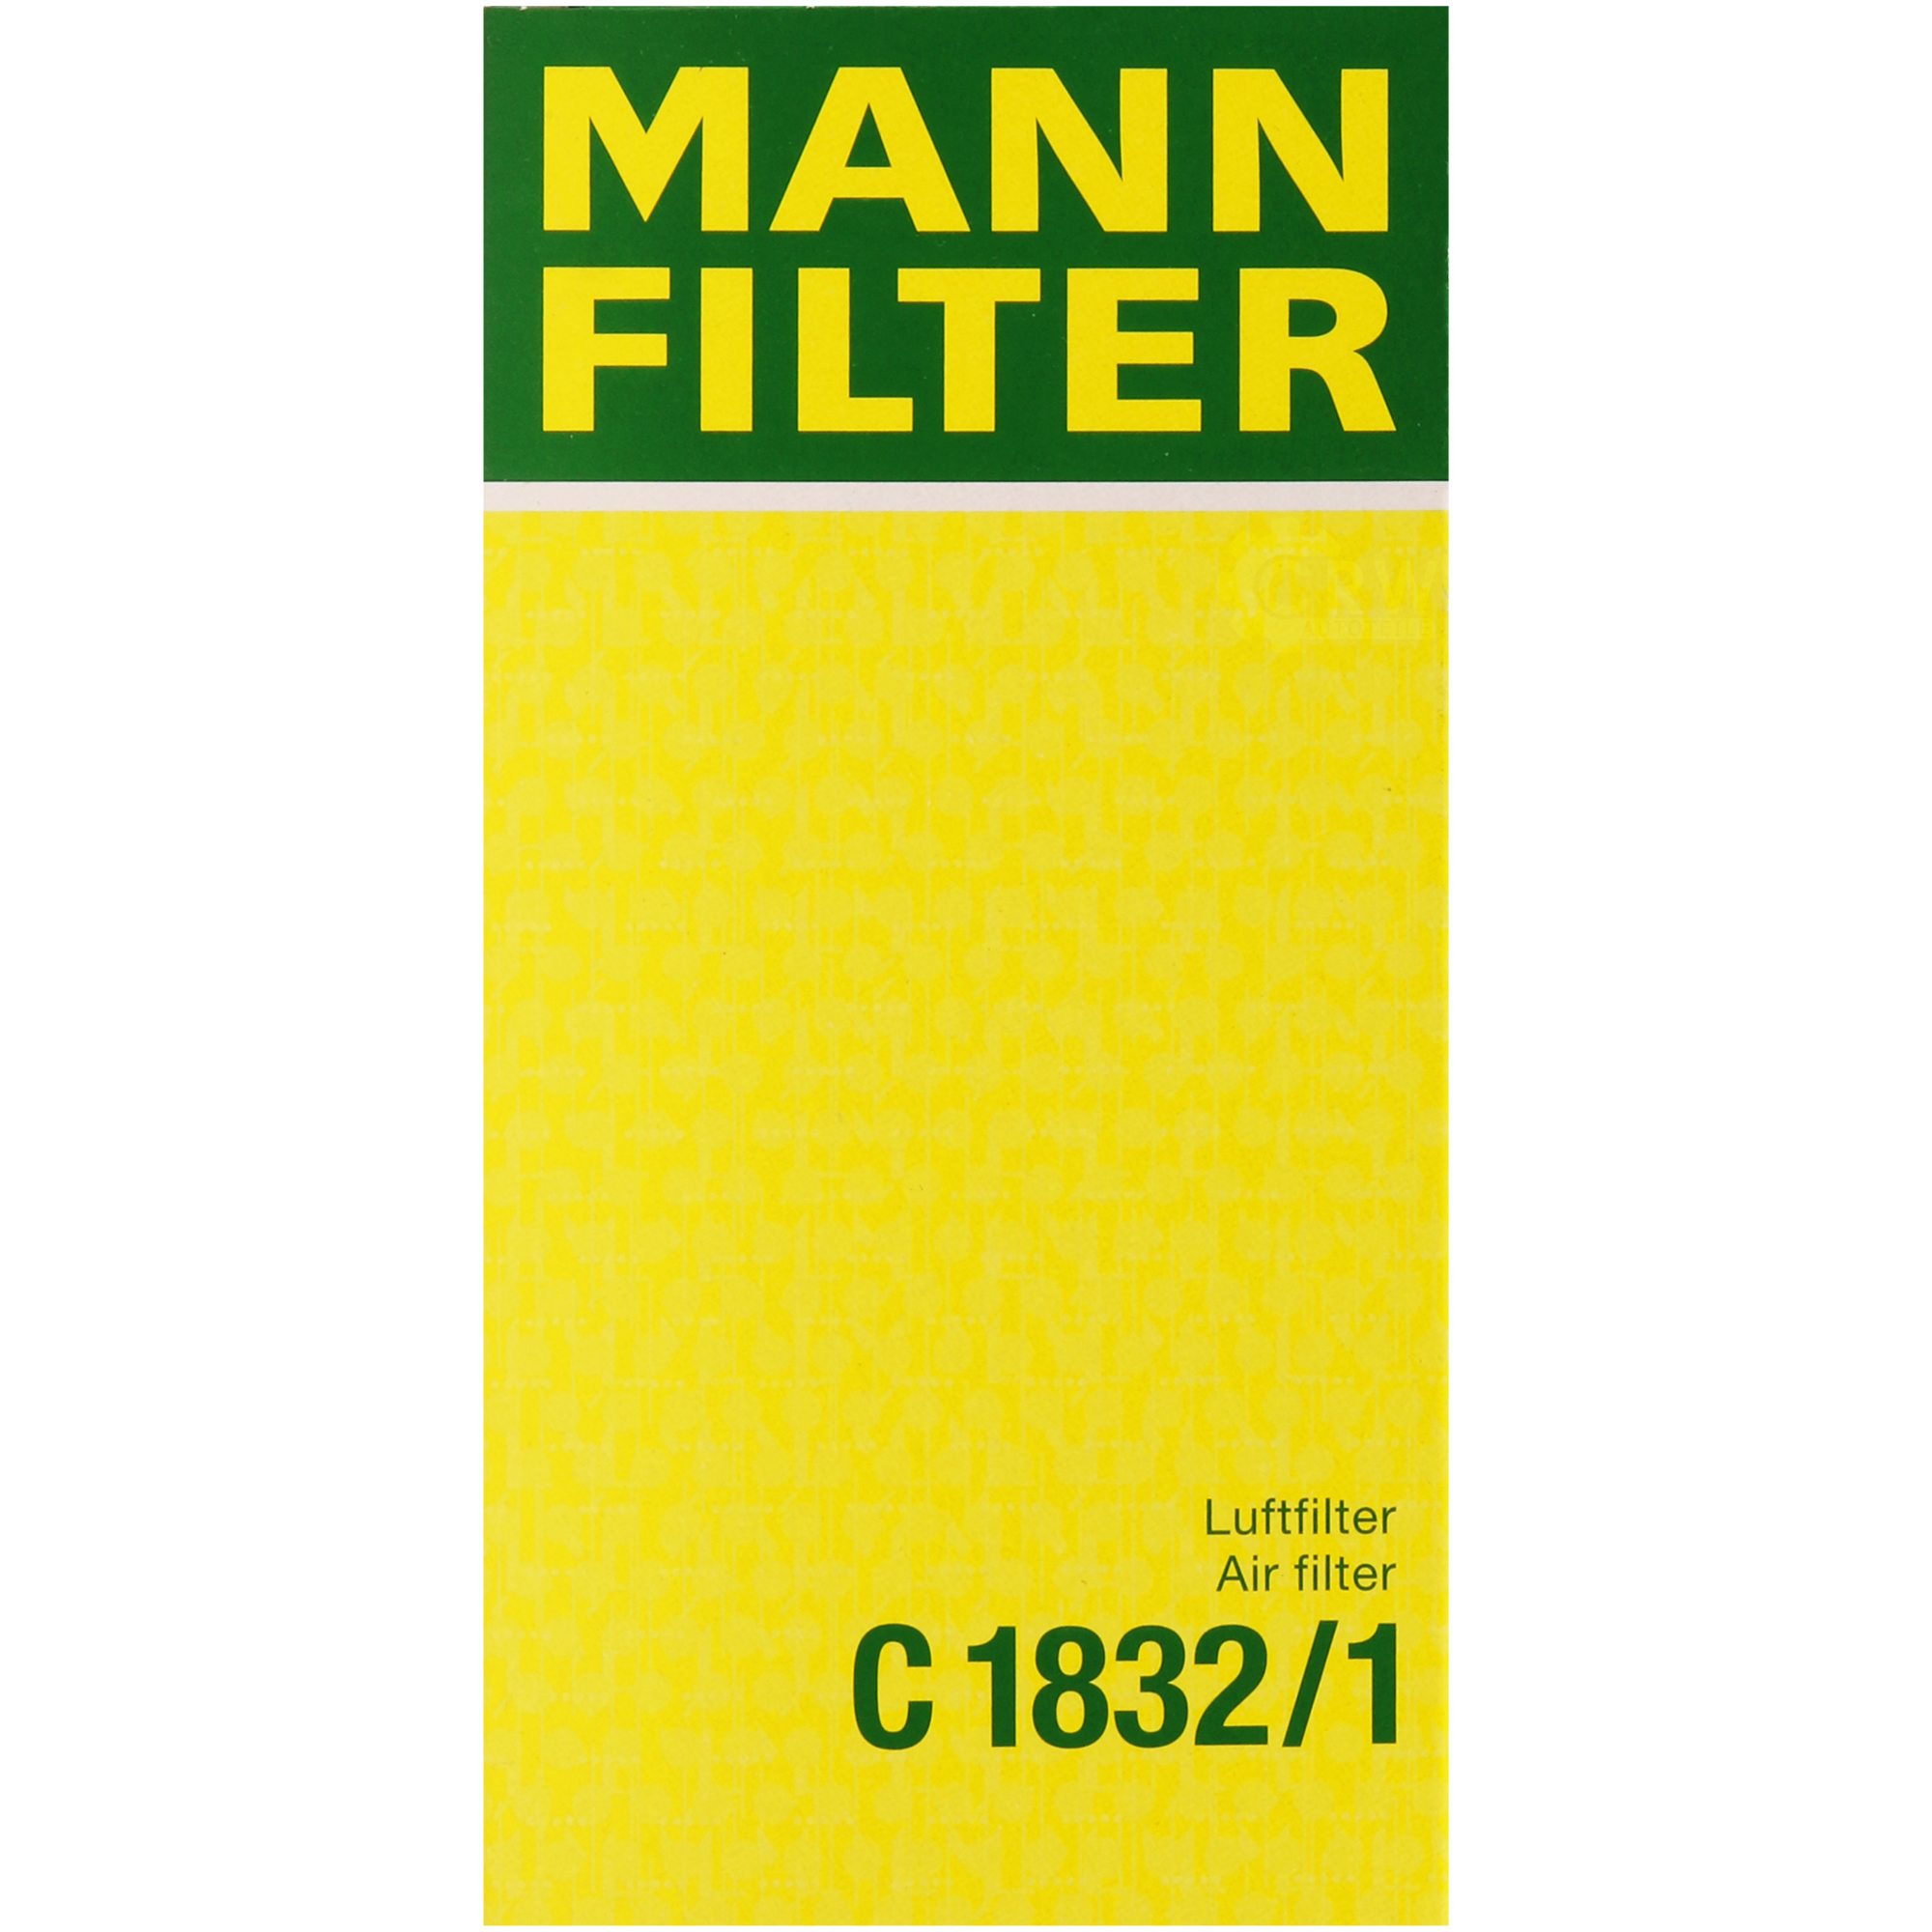 MANN-FILTER Luftfilter für Fiat Panda 141_ 750 1000 i.e Cat 141A_ 1100 4x4 Uno